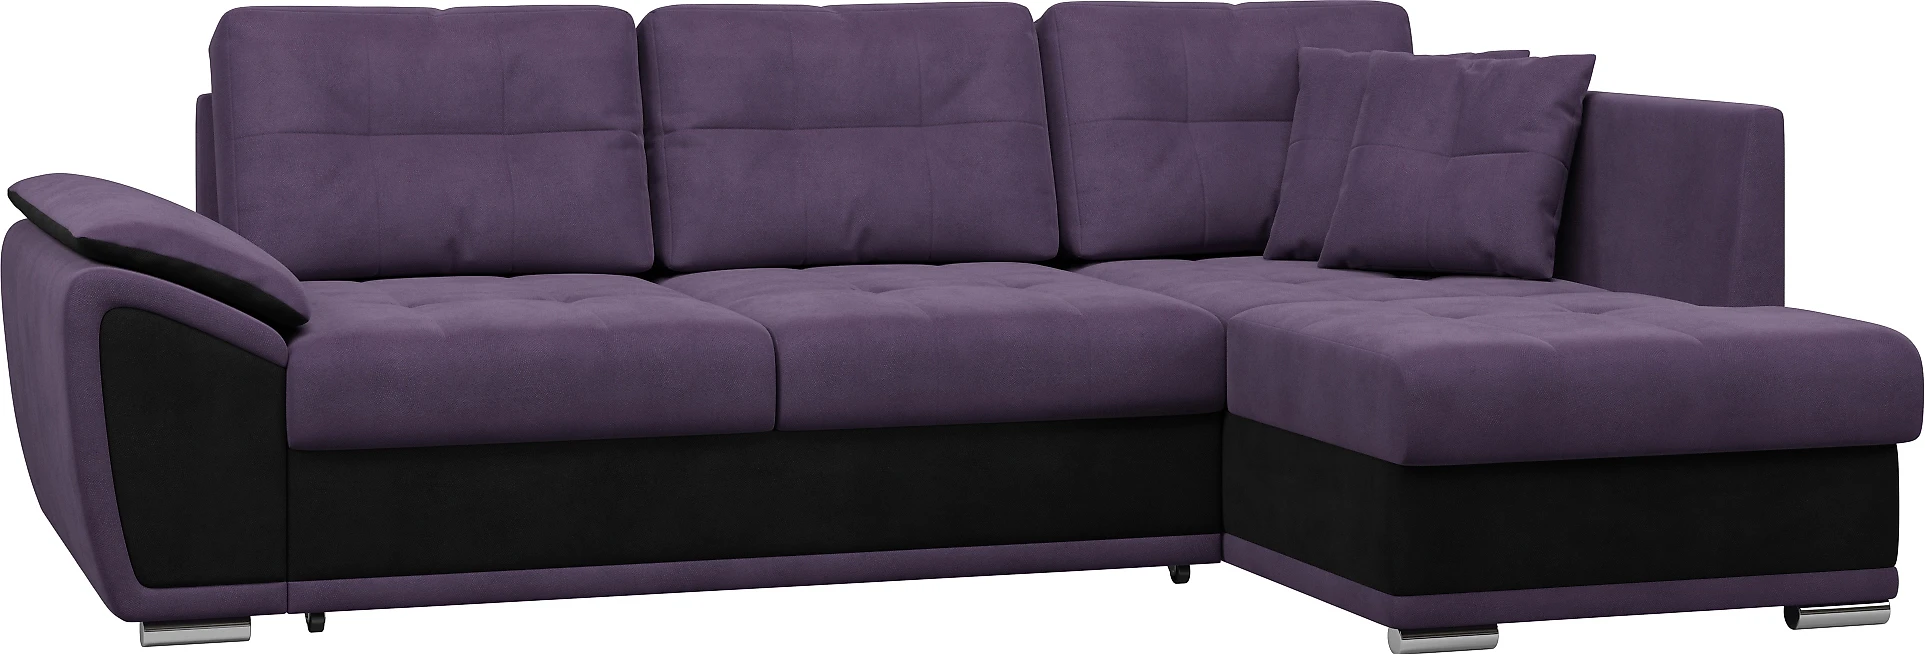 Угловой диван в классическом стиле Риттэр Плюш Грэйп